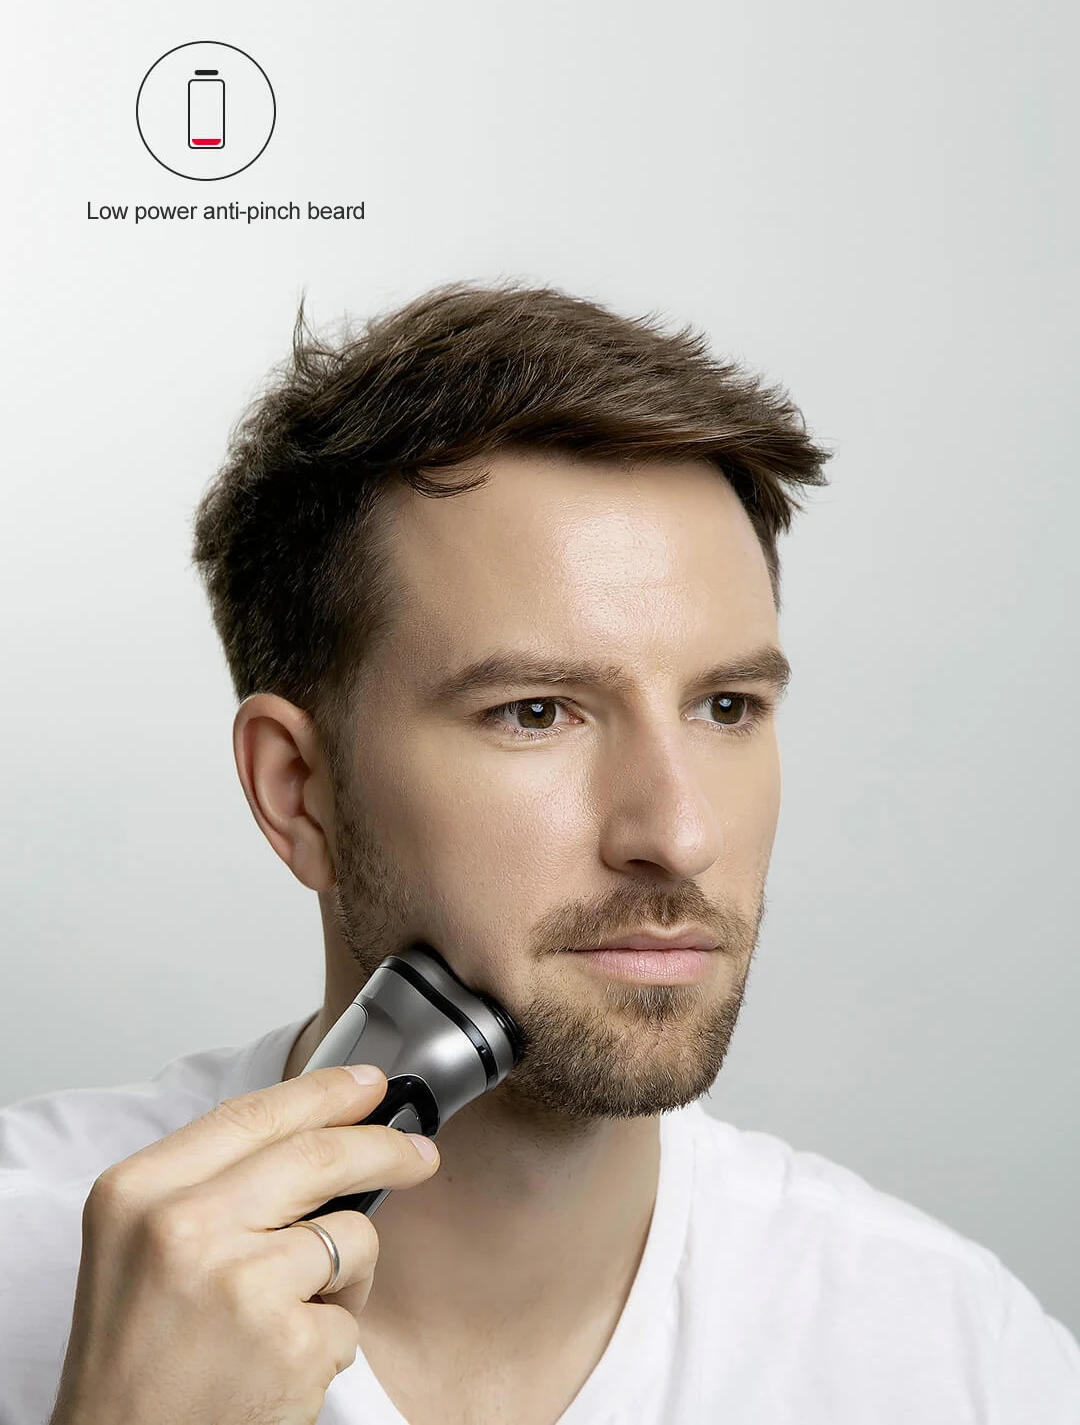 XIAOMI для лица бритва Enchen BlackStone 3D электробритва, мужские моющиеся type-C USB Перезаряжаемый станок для бритья бороды